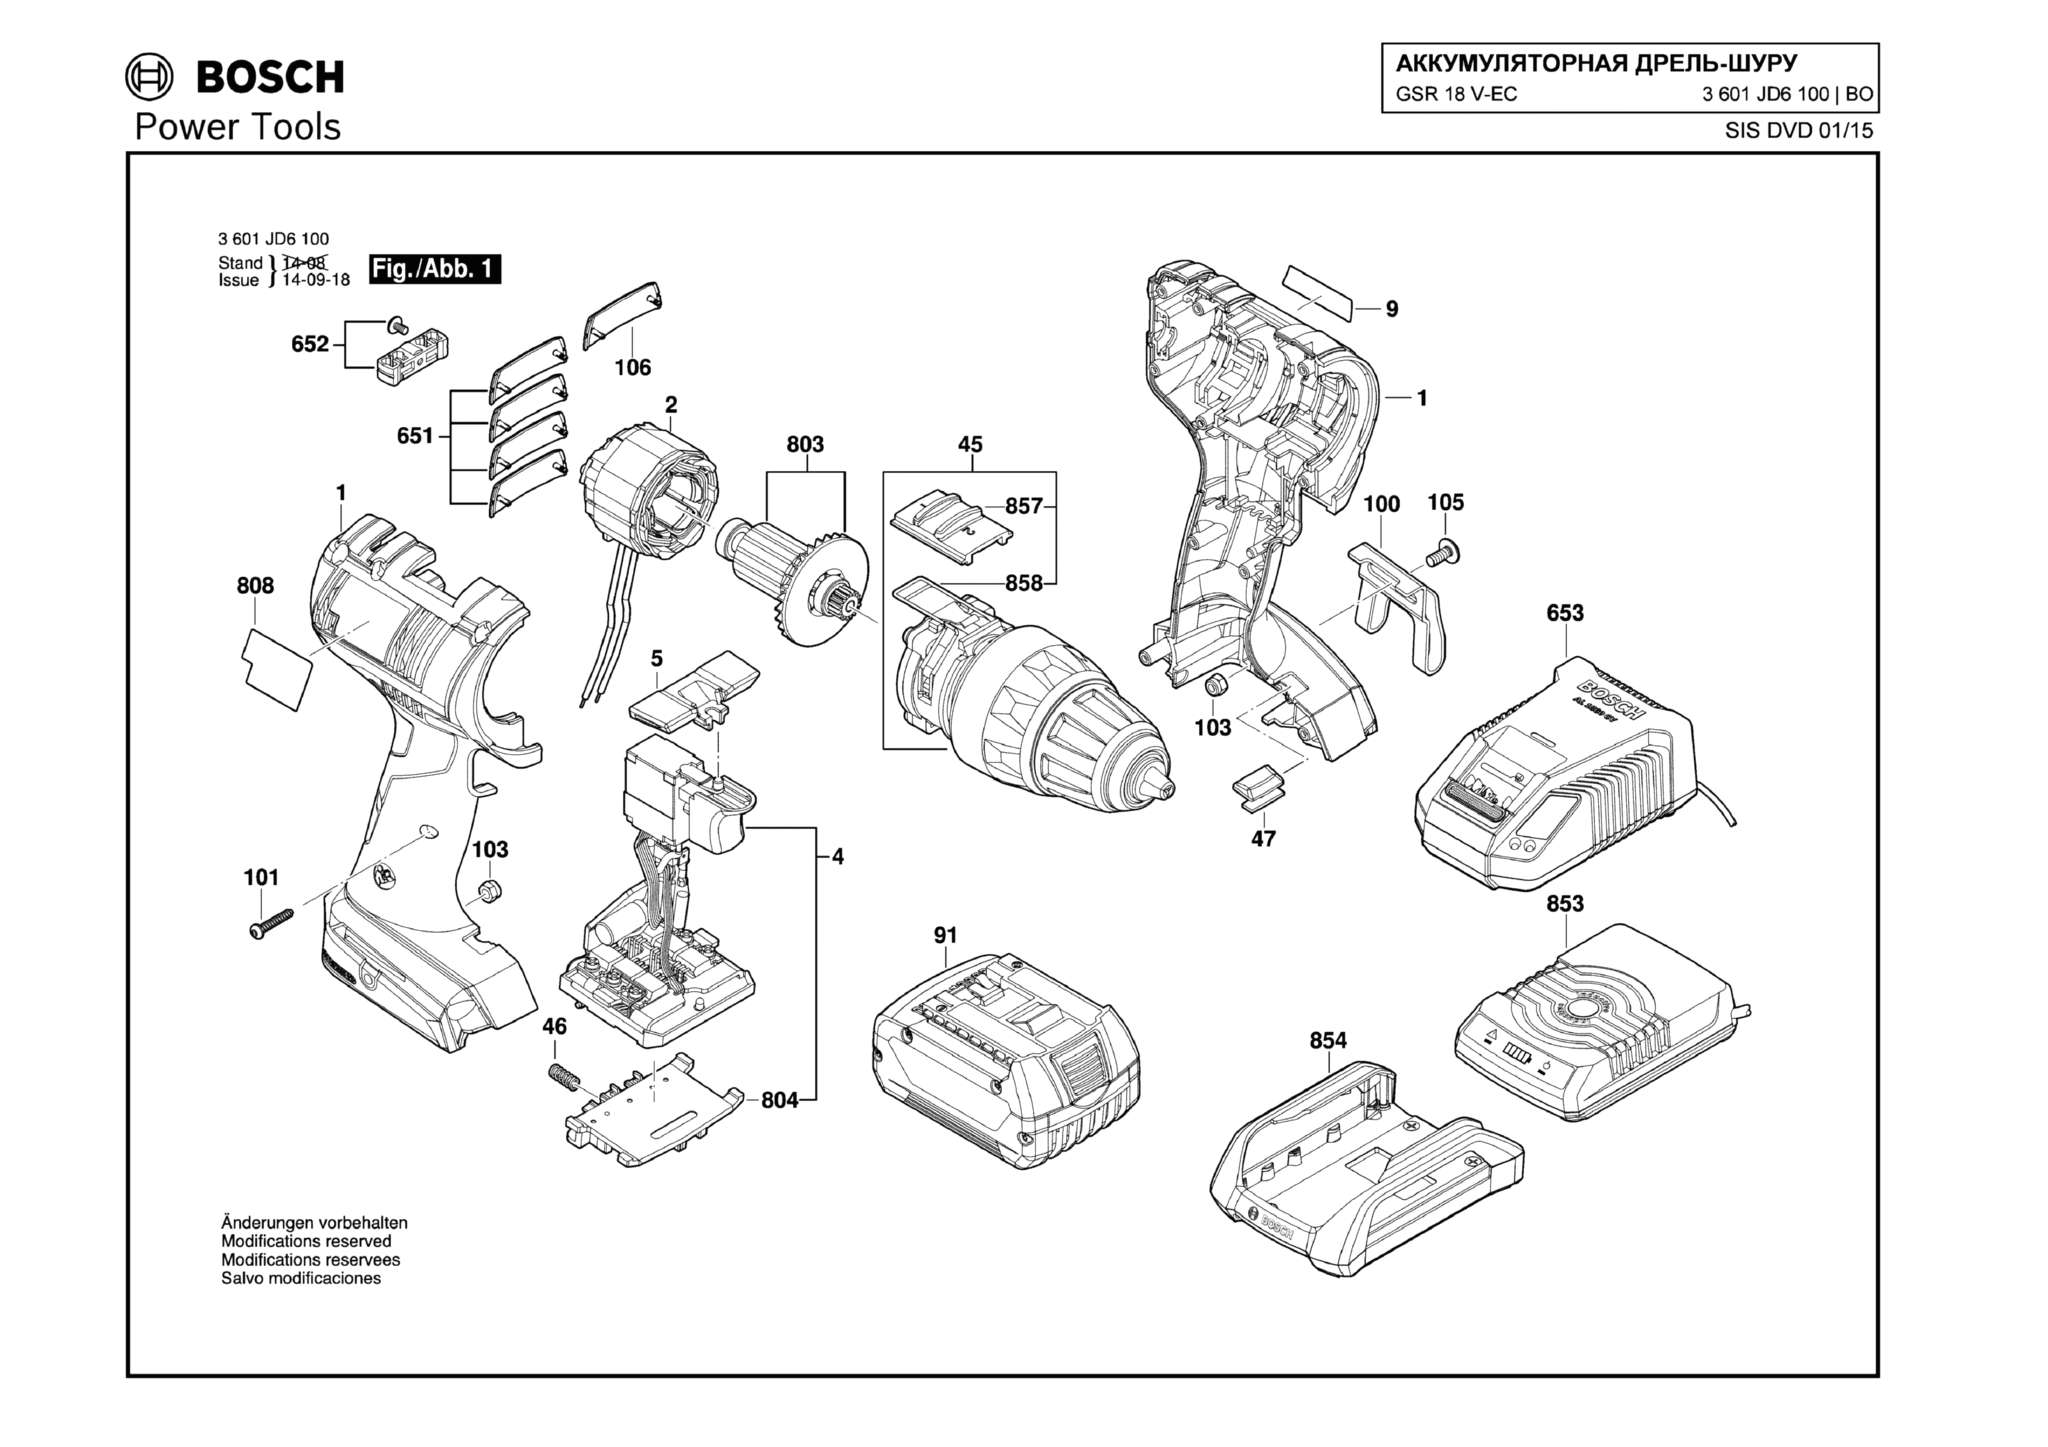 Запчасти, схема и деталировка Bosch GSR 18 V-EC (ТИП 3601JD6100)